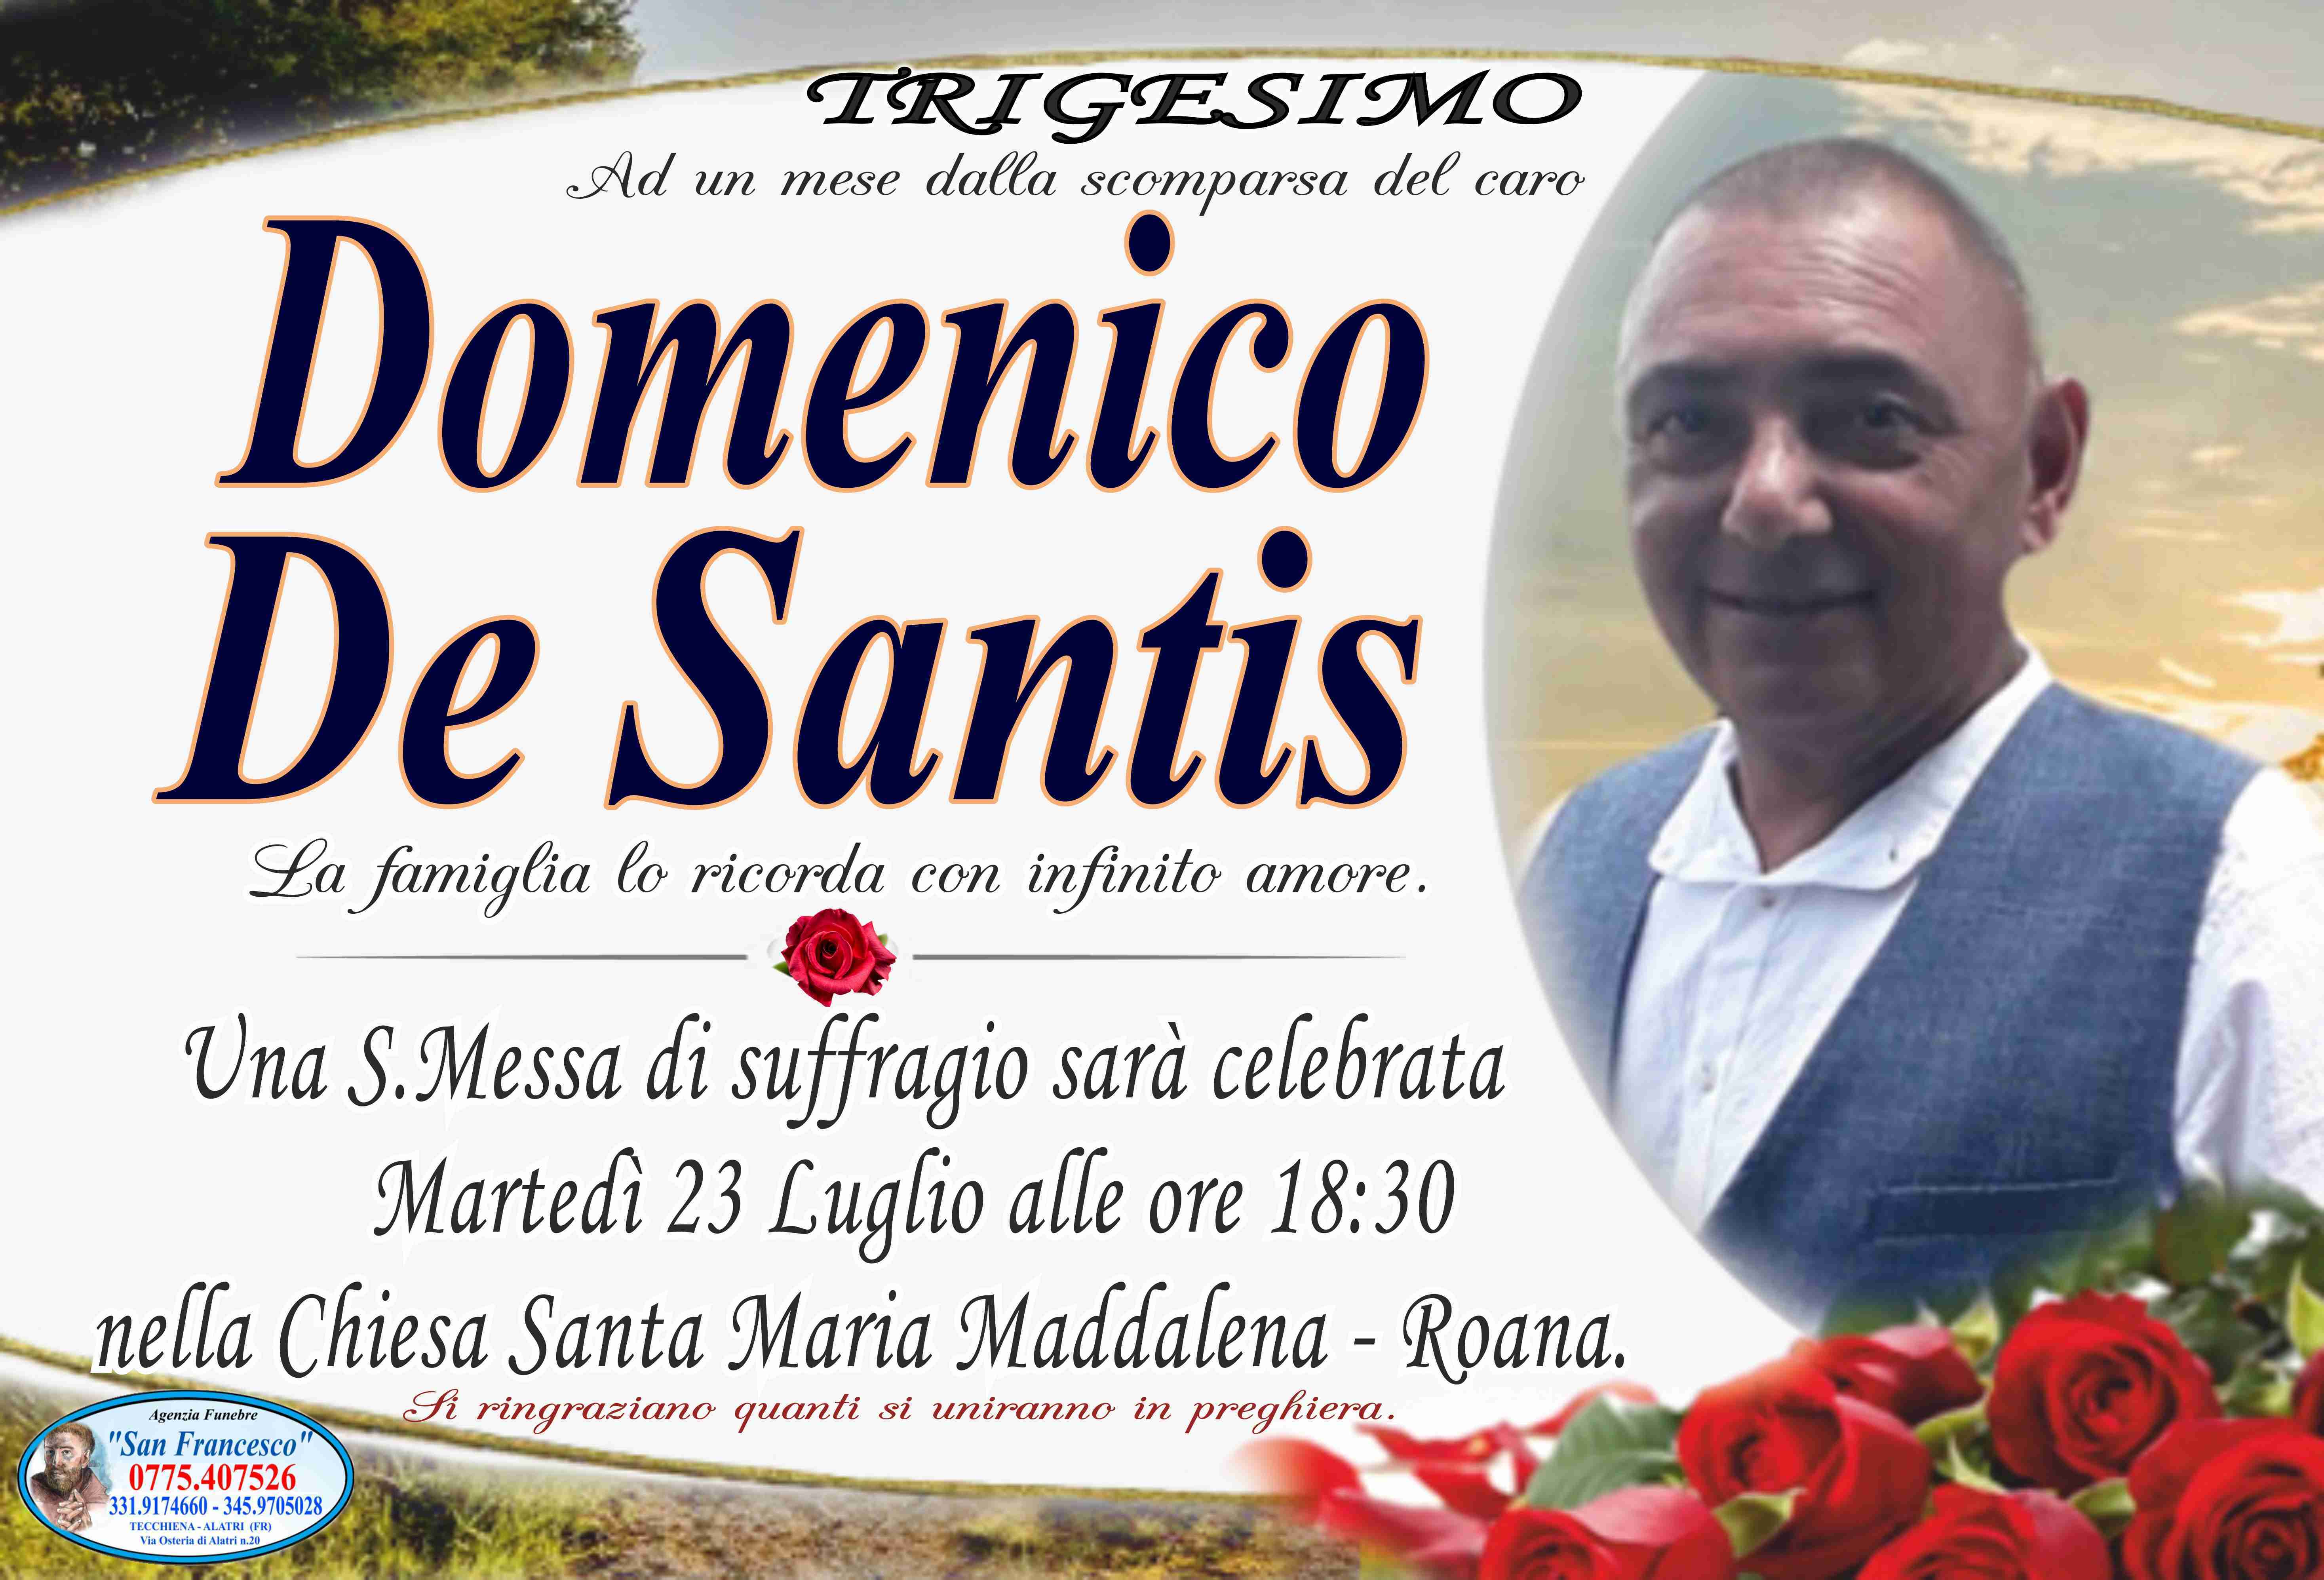 Domenico De Santis